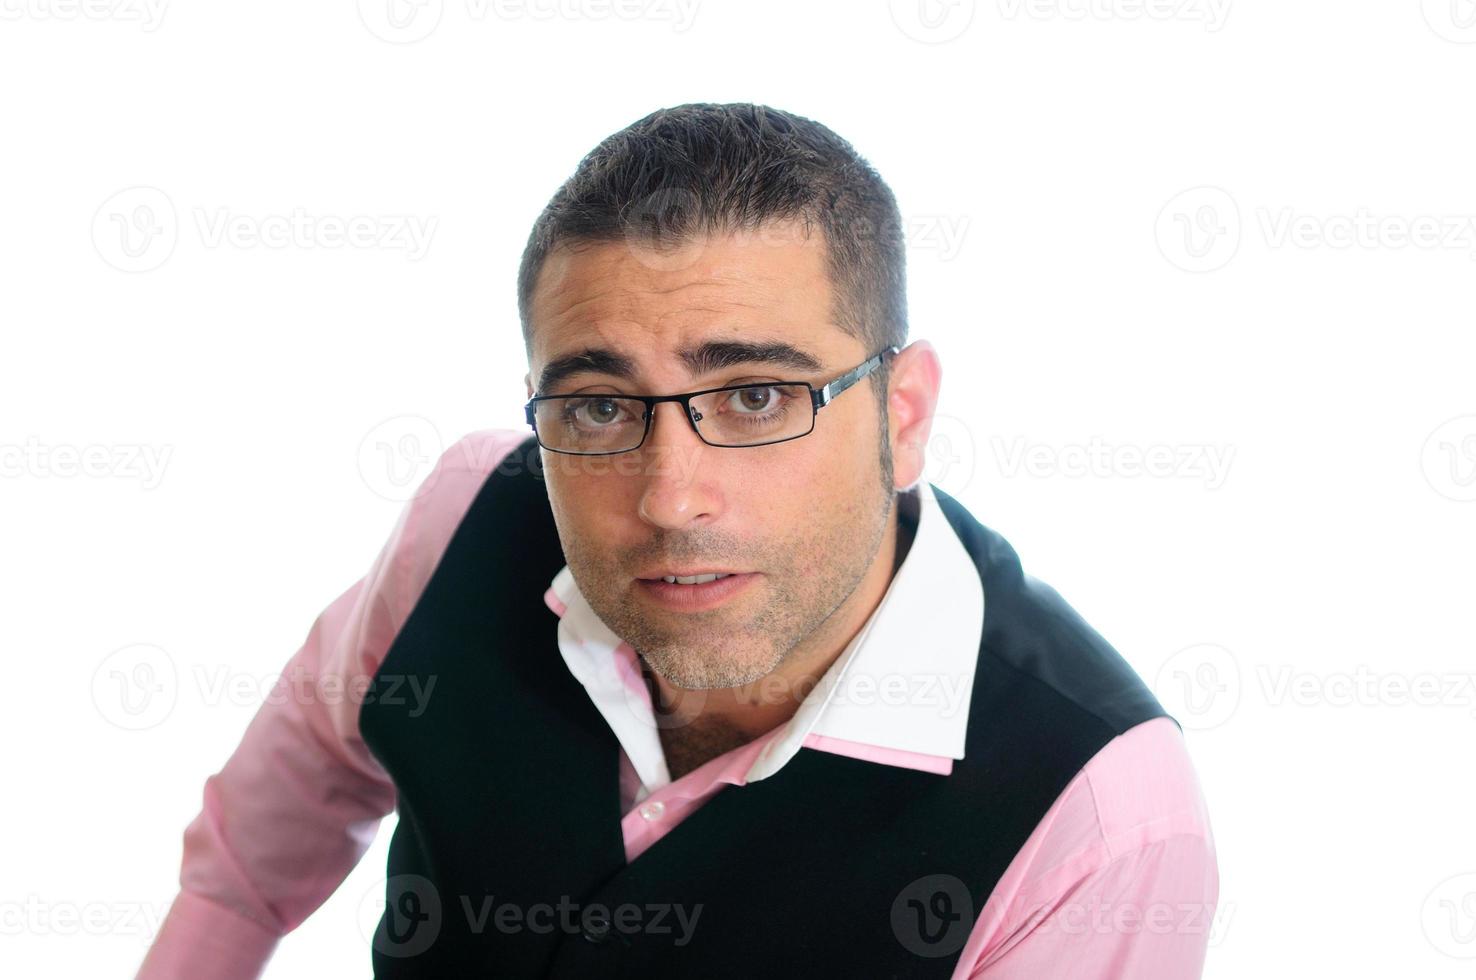 homme d'affaires prospère avec des lunettes portant un gilet et une chemise rose photo